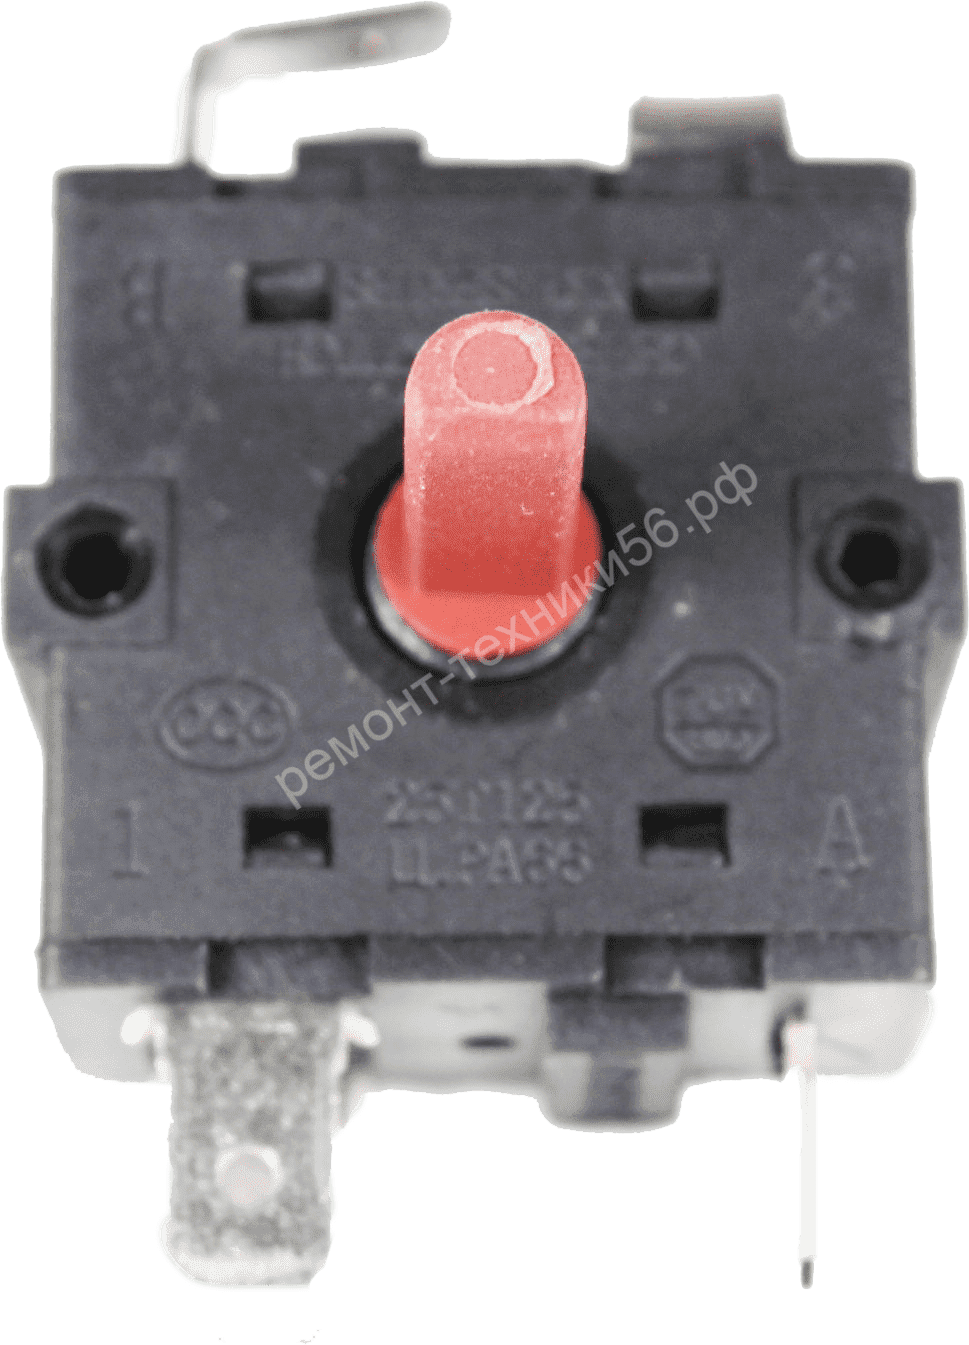 Переключатель Rotary Switch XK1-233,2-1 от ведущих производителей фото3